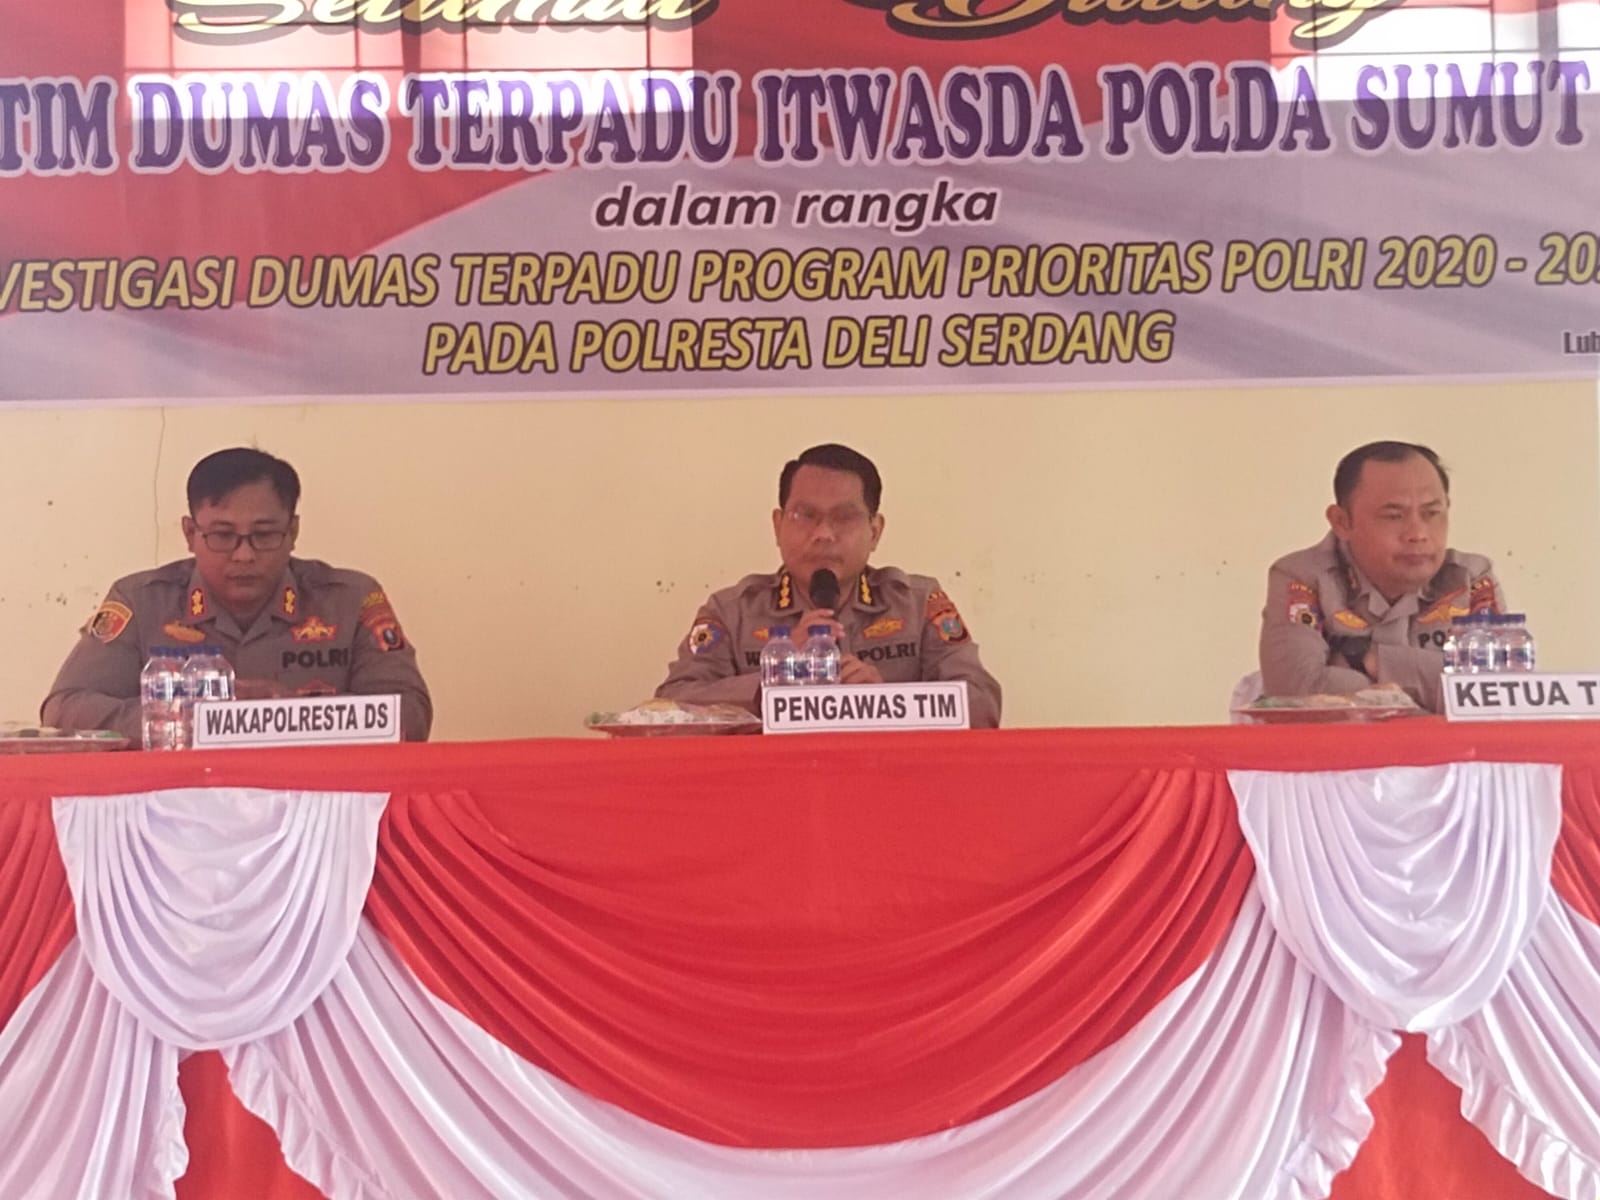 Polresta Deli Serdang Sambut Tim Investigasi Dumas Terpadu Dari Itwasda Polda Sumatera Utara .